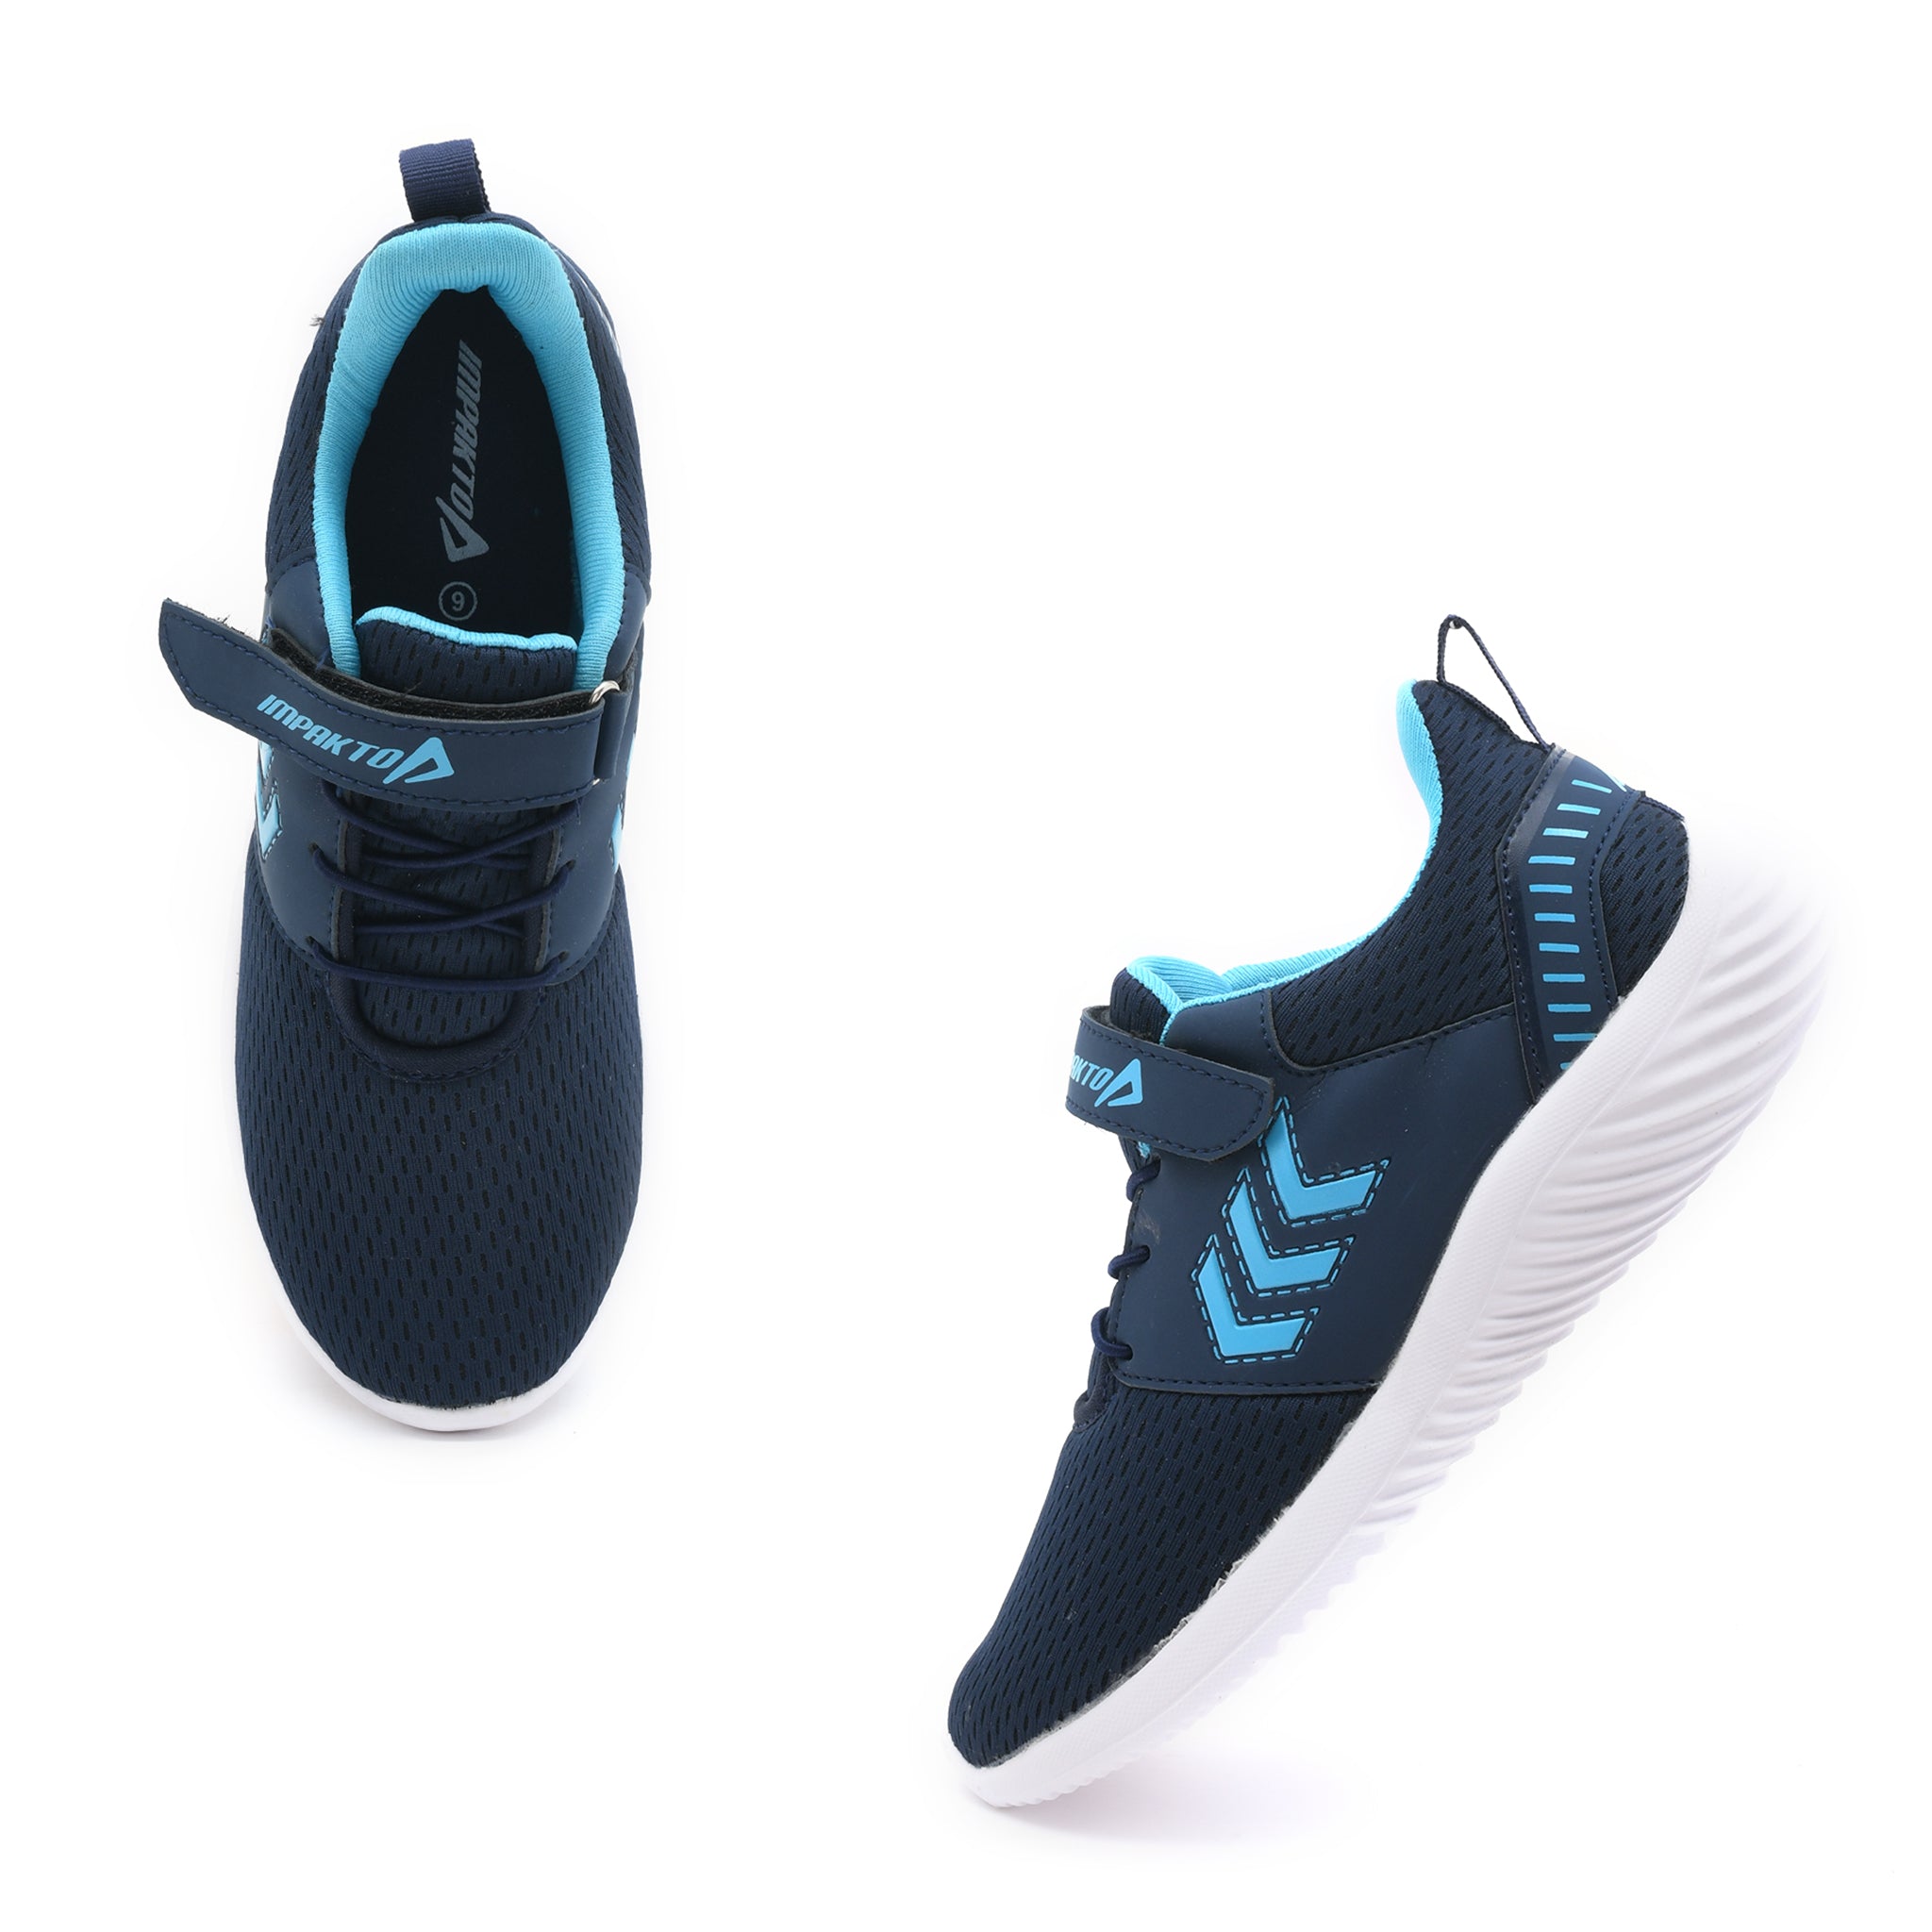 Impakto Celestial Navy Blue Women's Running Shoes